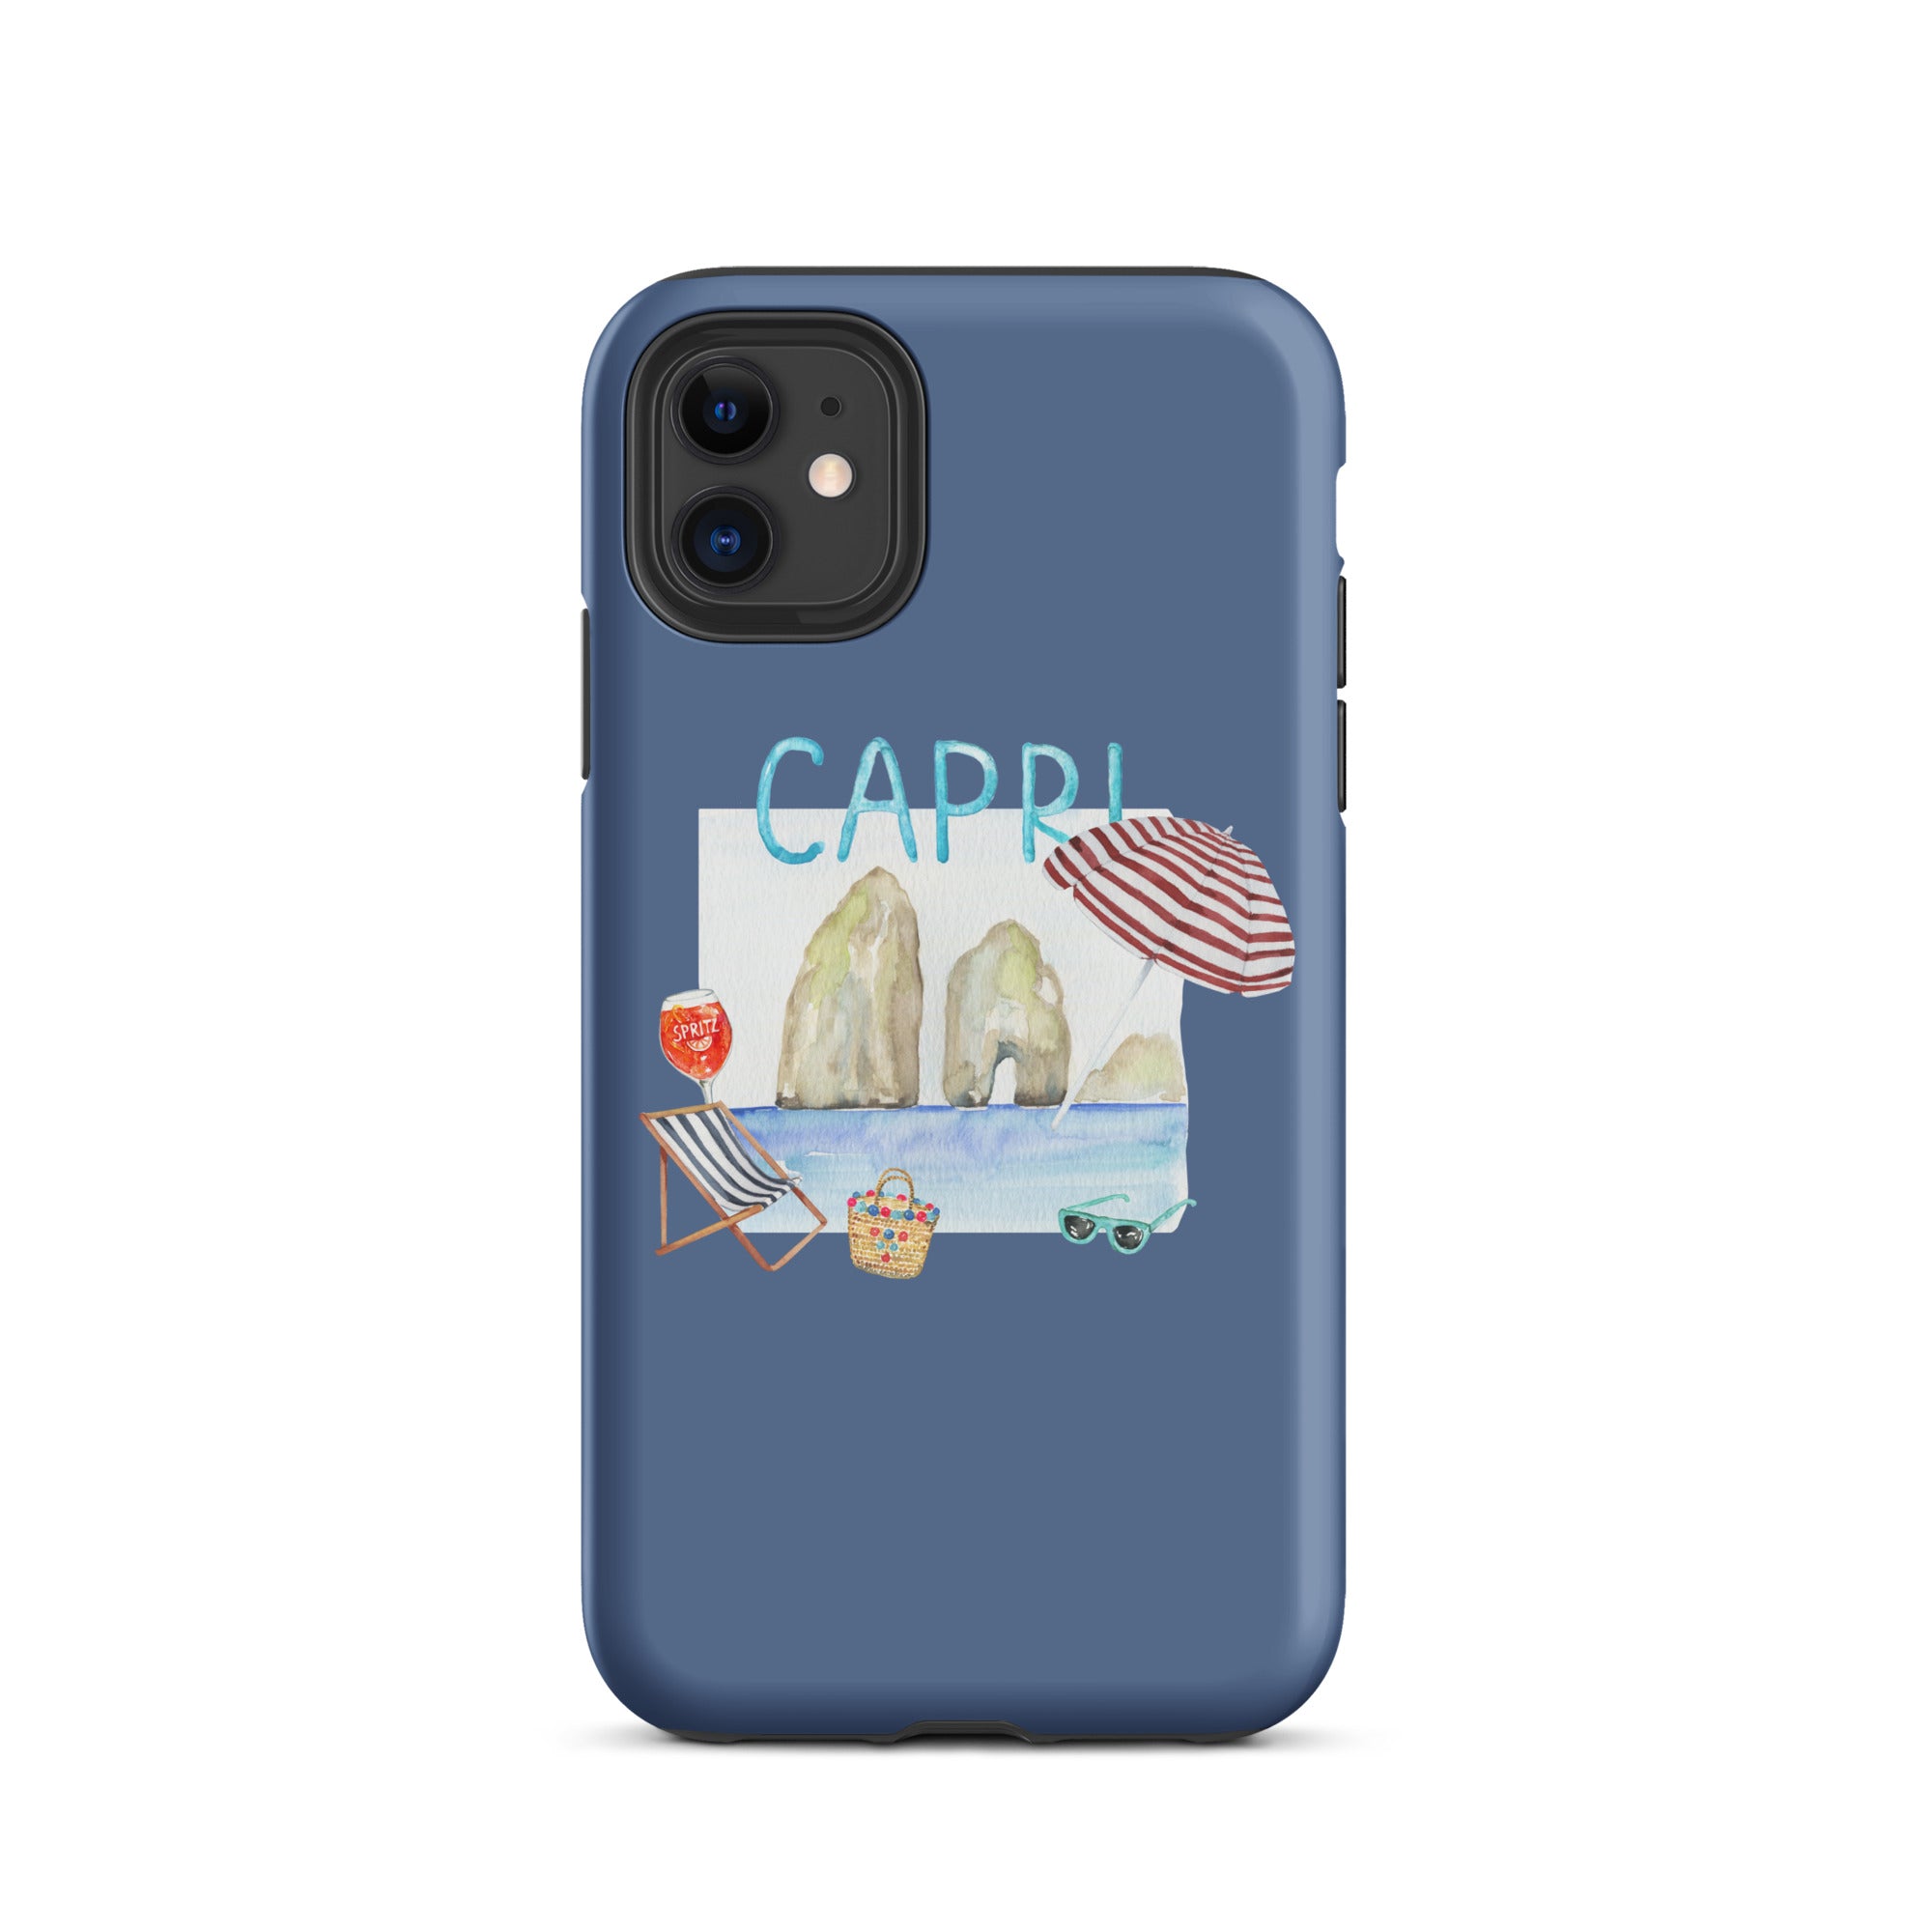 Capri - Tough Case for iPhone®